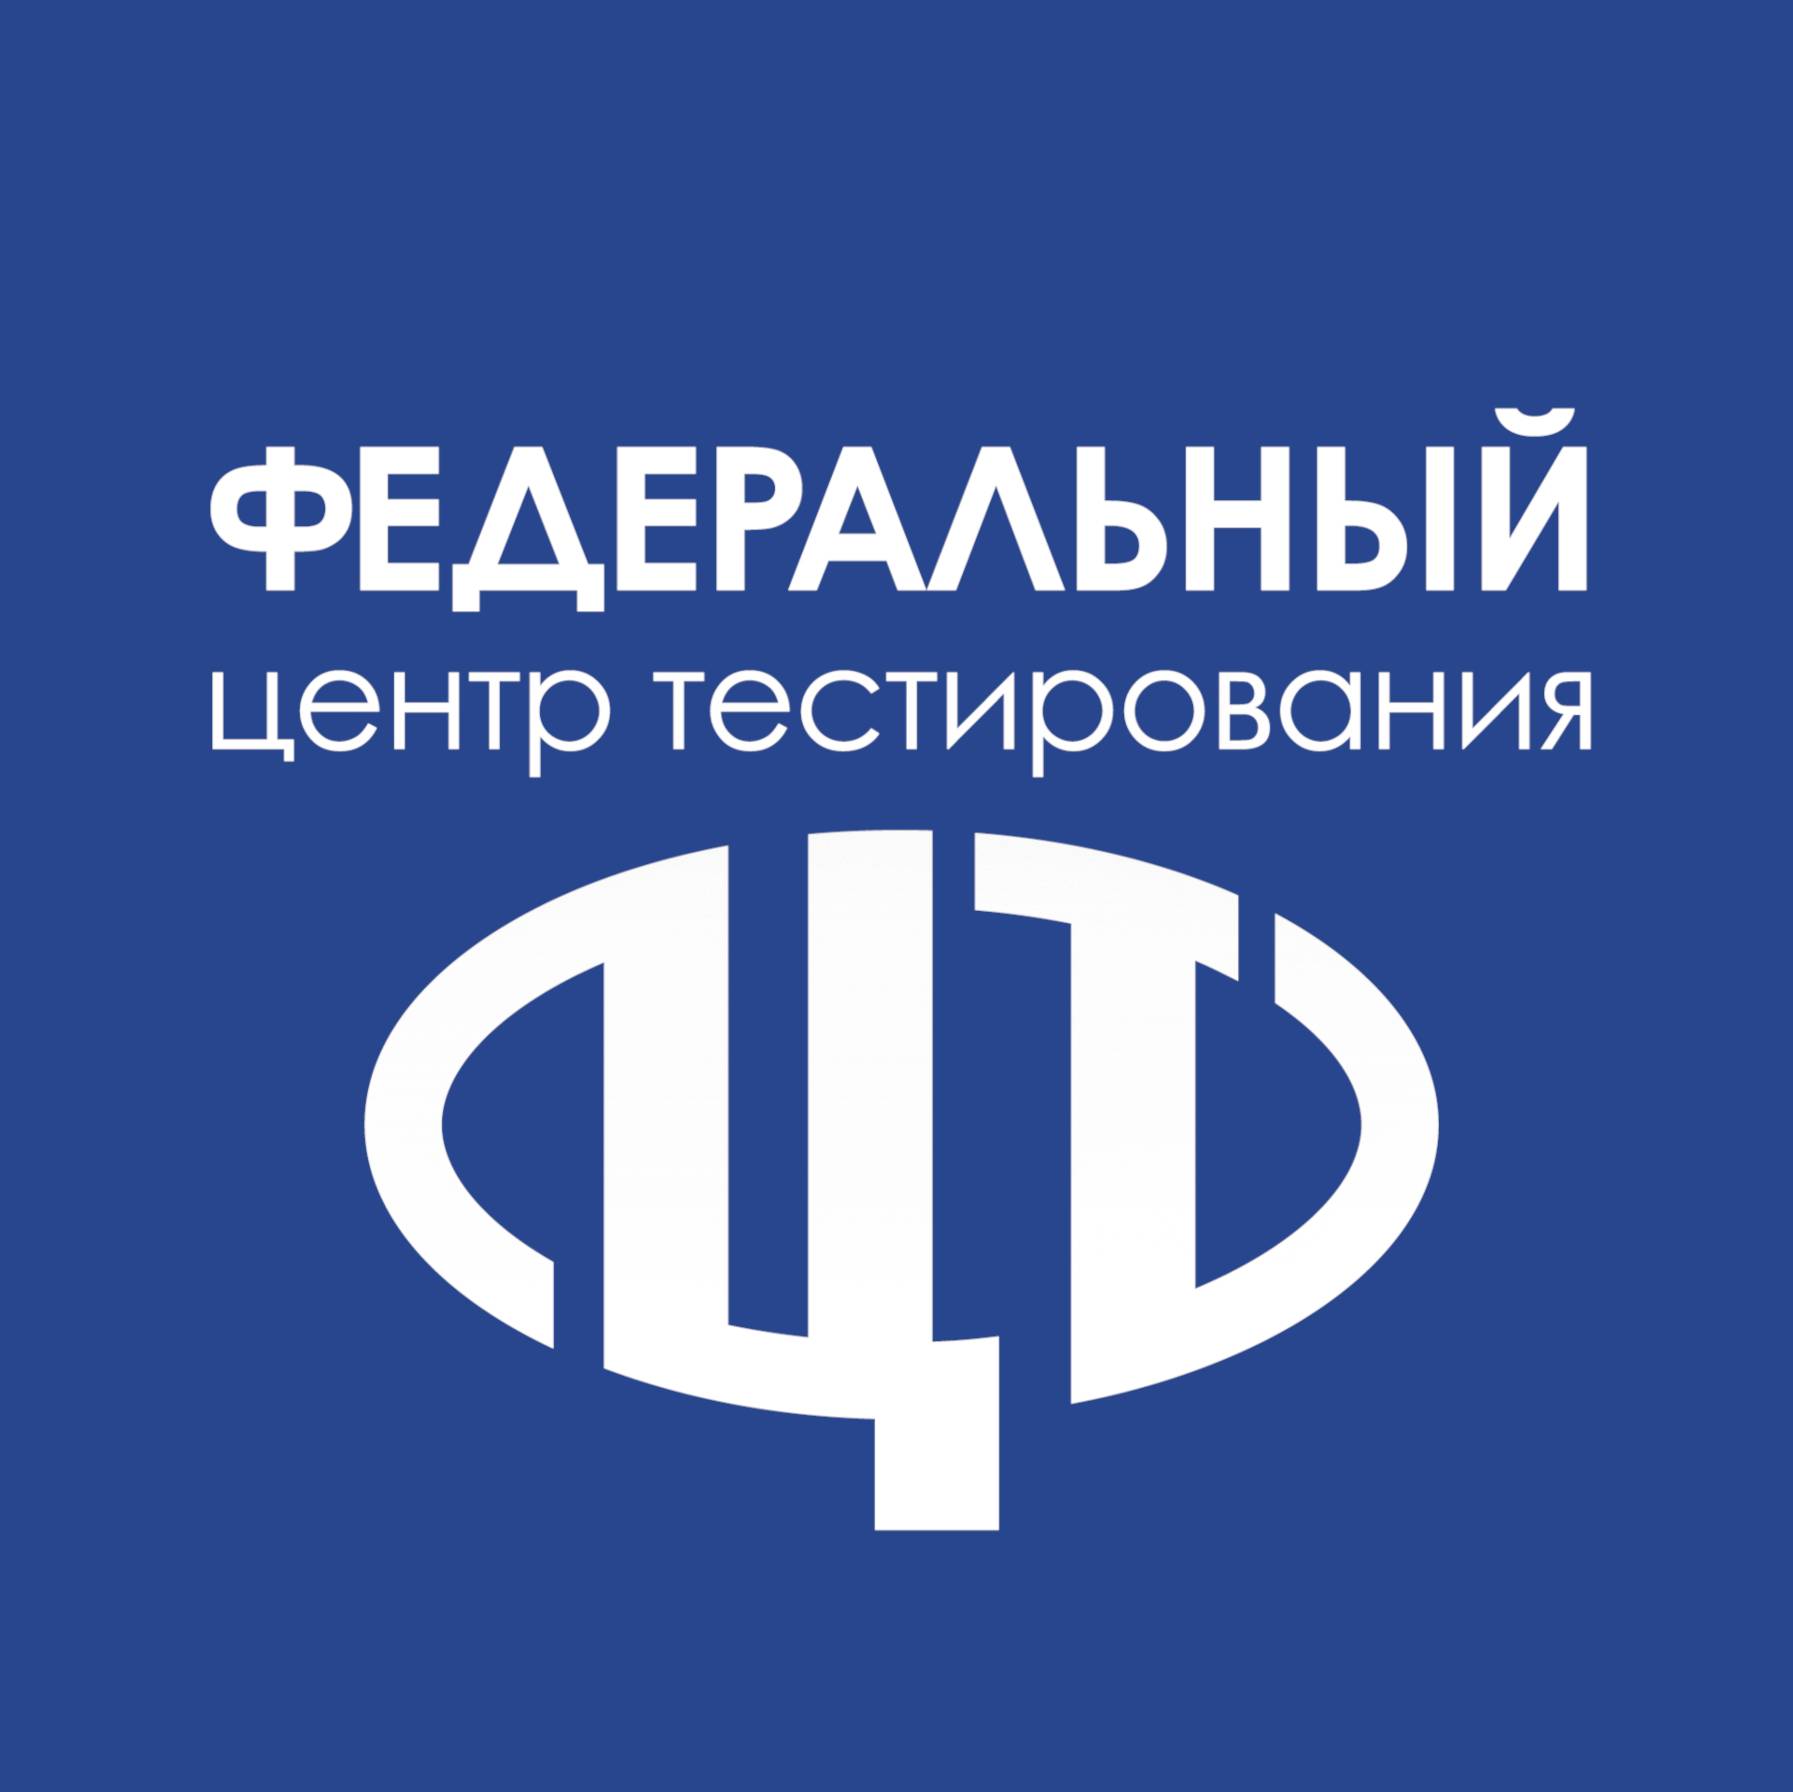 Иконка канала ФГБУ "Федеральный центр тестирования"